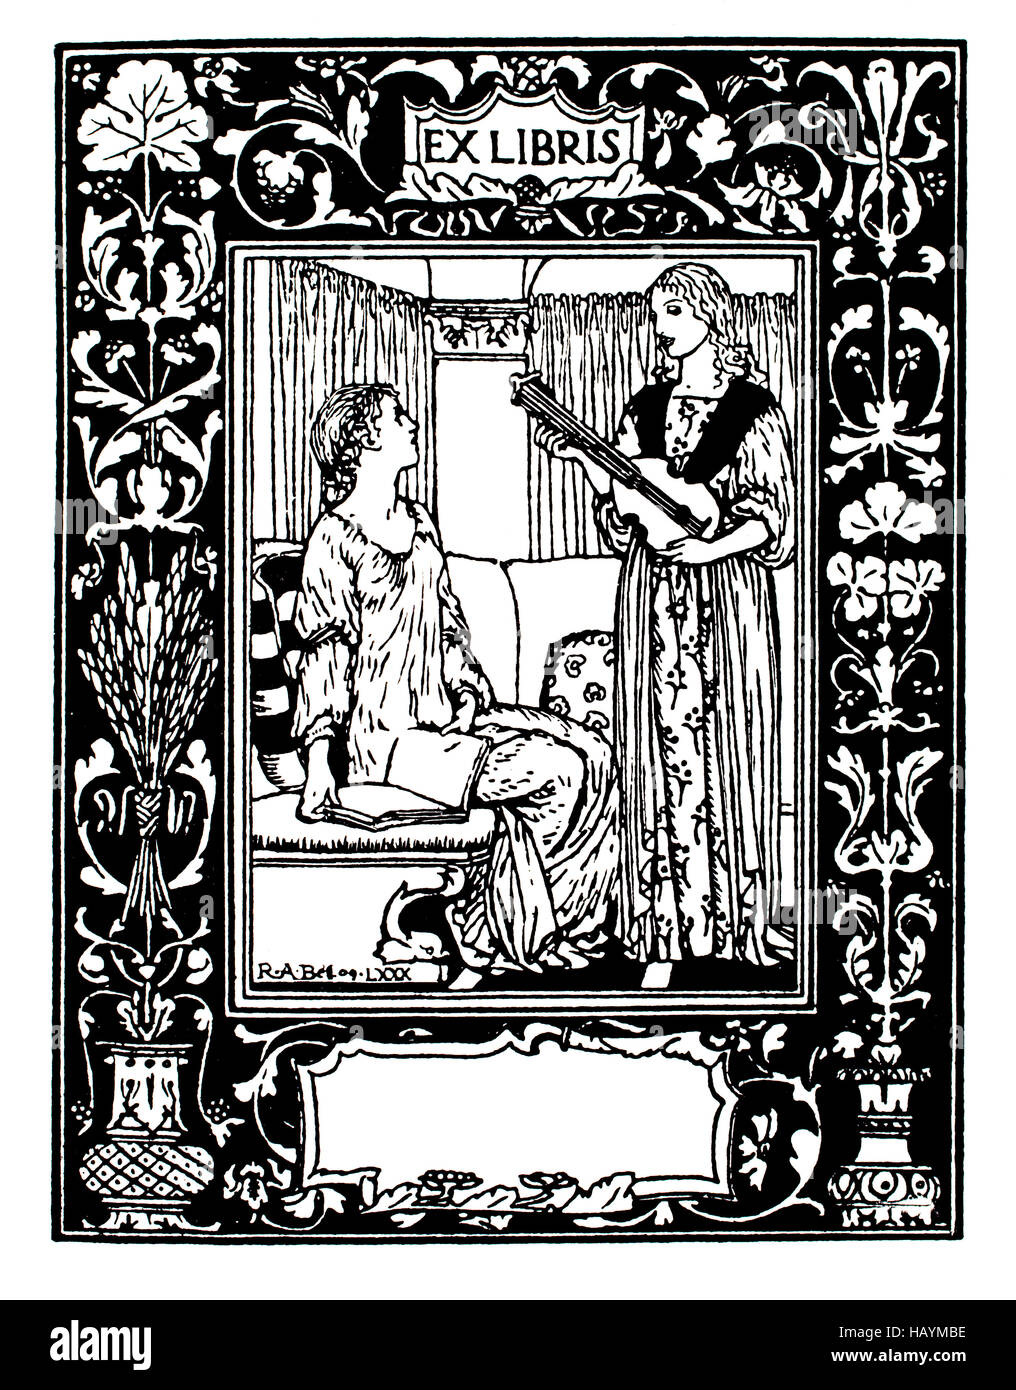 Ex-libris ex-libris bibliothèque vide par R Anning Bell, illustration de la ligne de 1911 Studio Magazine Banque D'Images